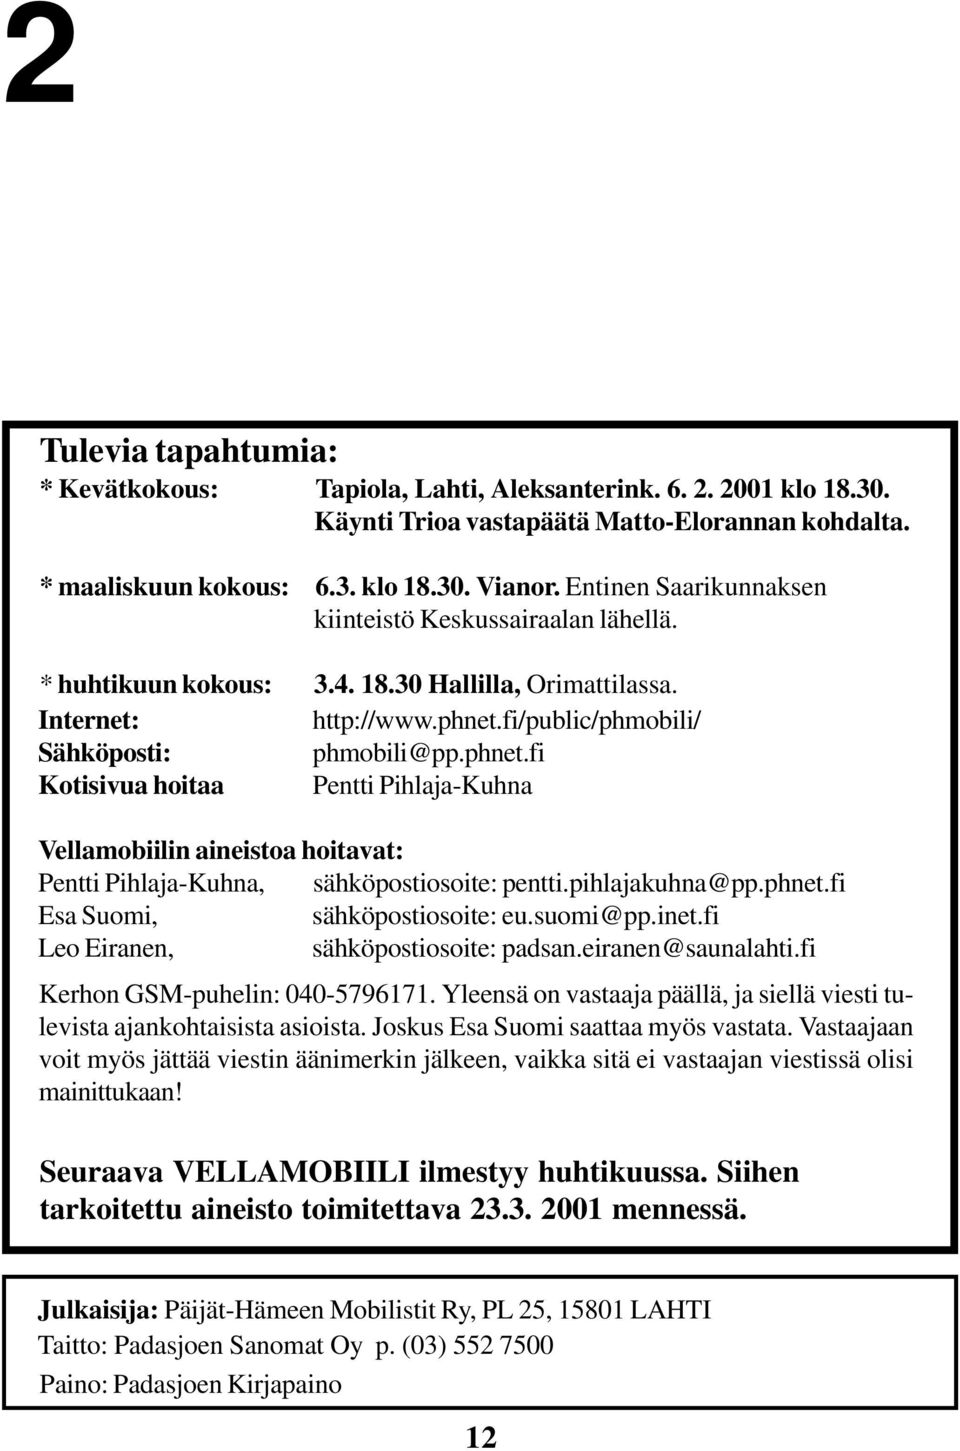 fi/public/phmobili/ Sähköposti: phmobili@pp.phnet.fi Kotisivua hoitaa Pentti Pihlaja-Kuhna Vellamobiilin aineistoa hoitavat: Pentti Pihlaja-Kuhna, sähköpostiosoite: pentti.pihlajakuhna@pp.phnet.fi Esa Suomi, sähköpostiosoite: eu.